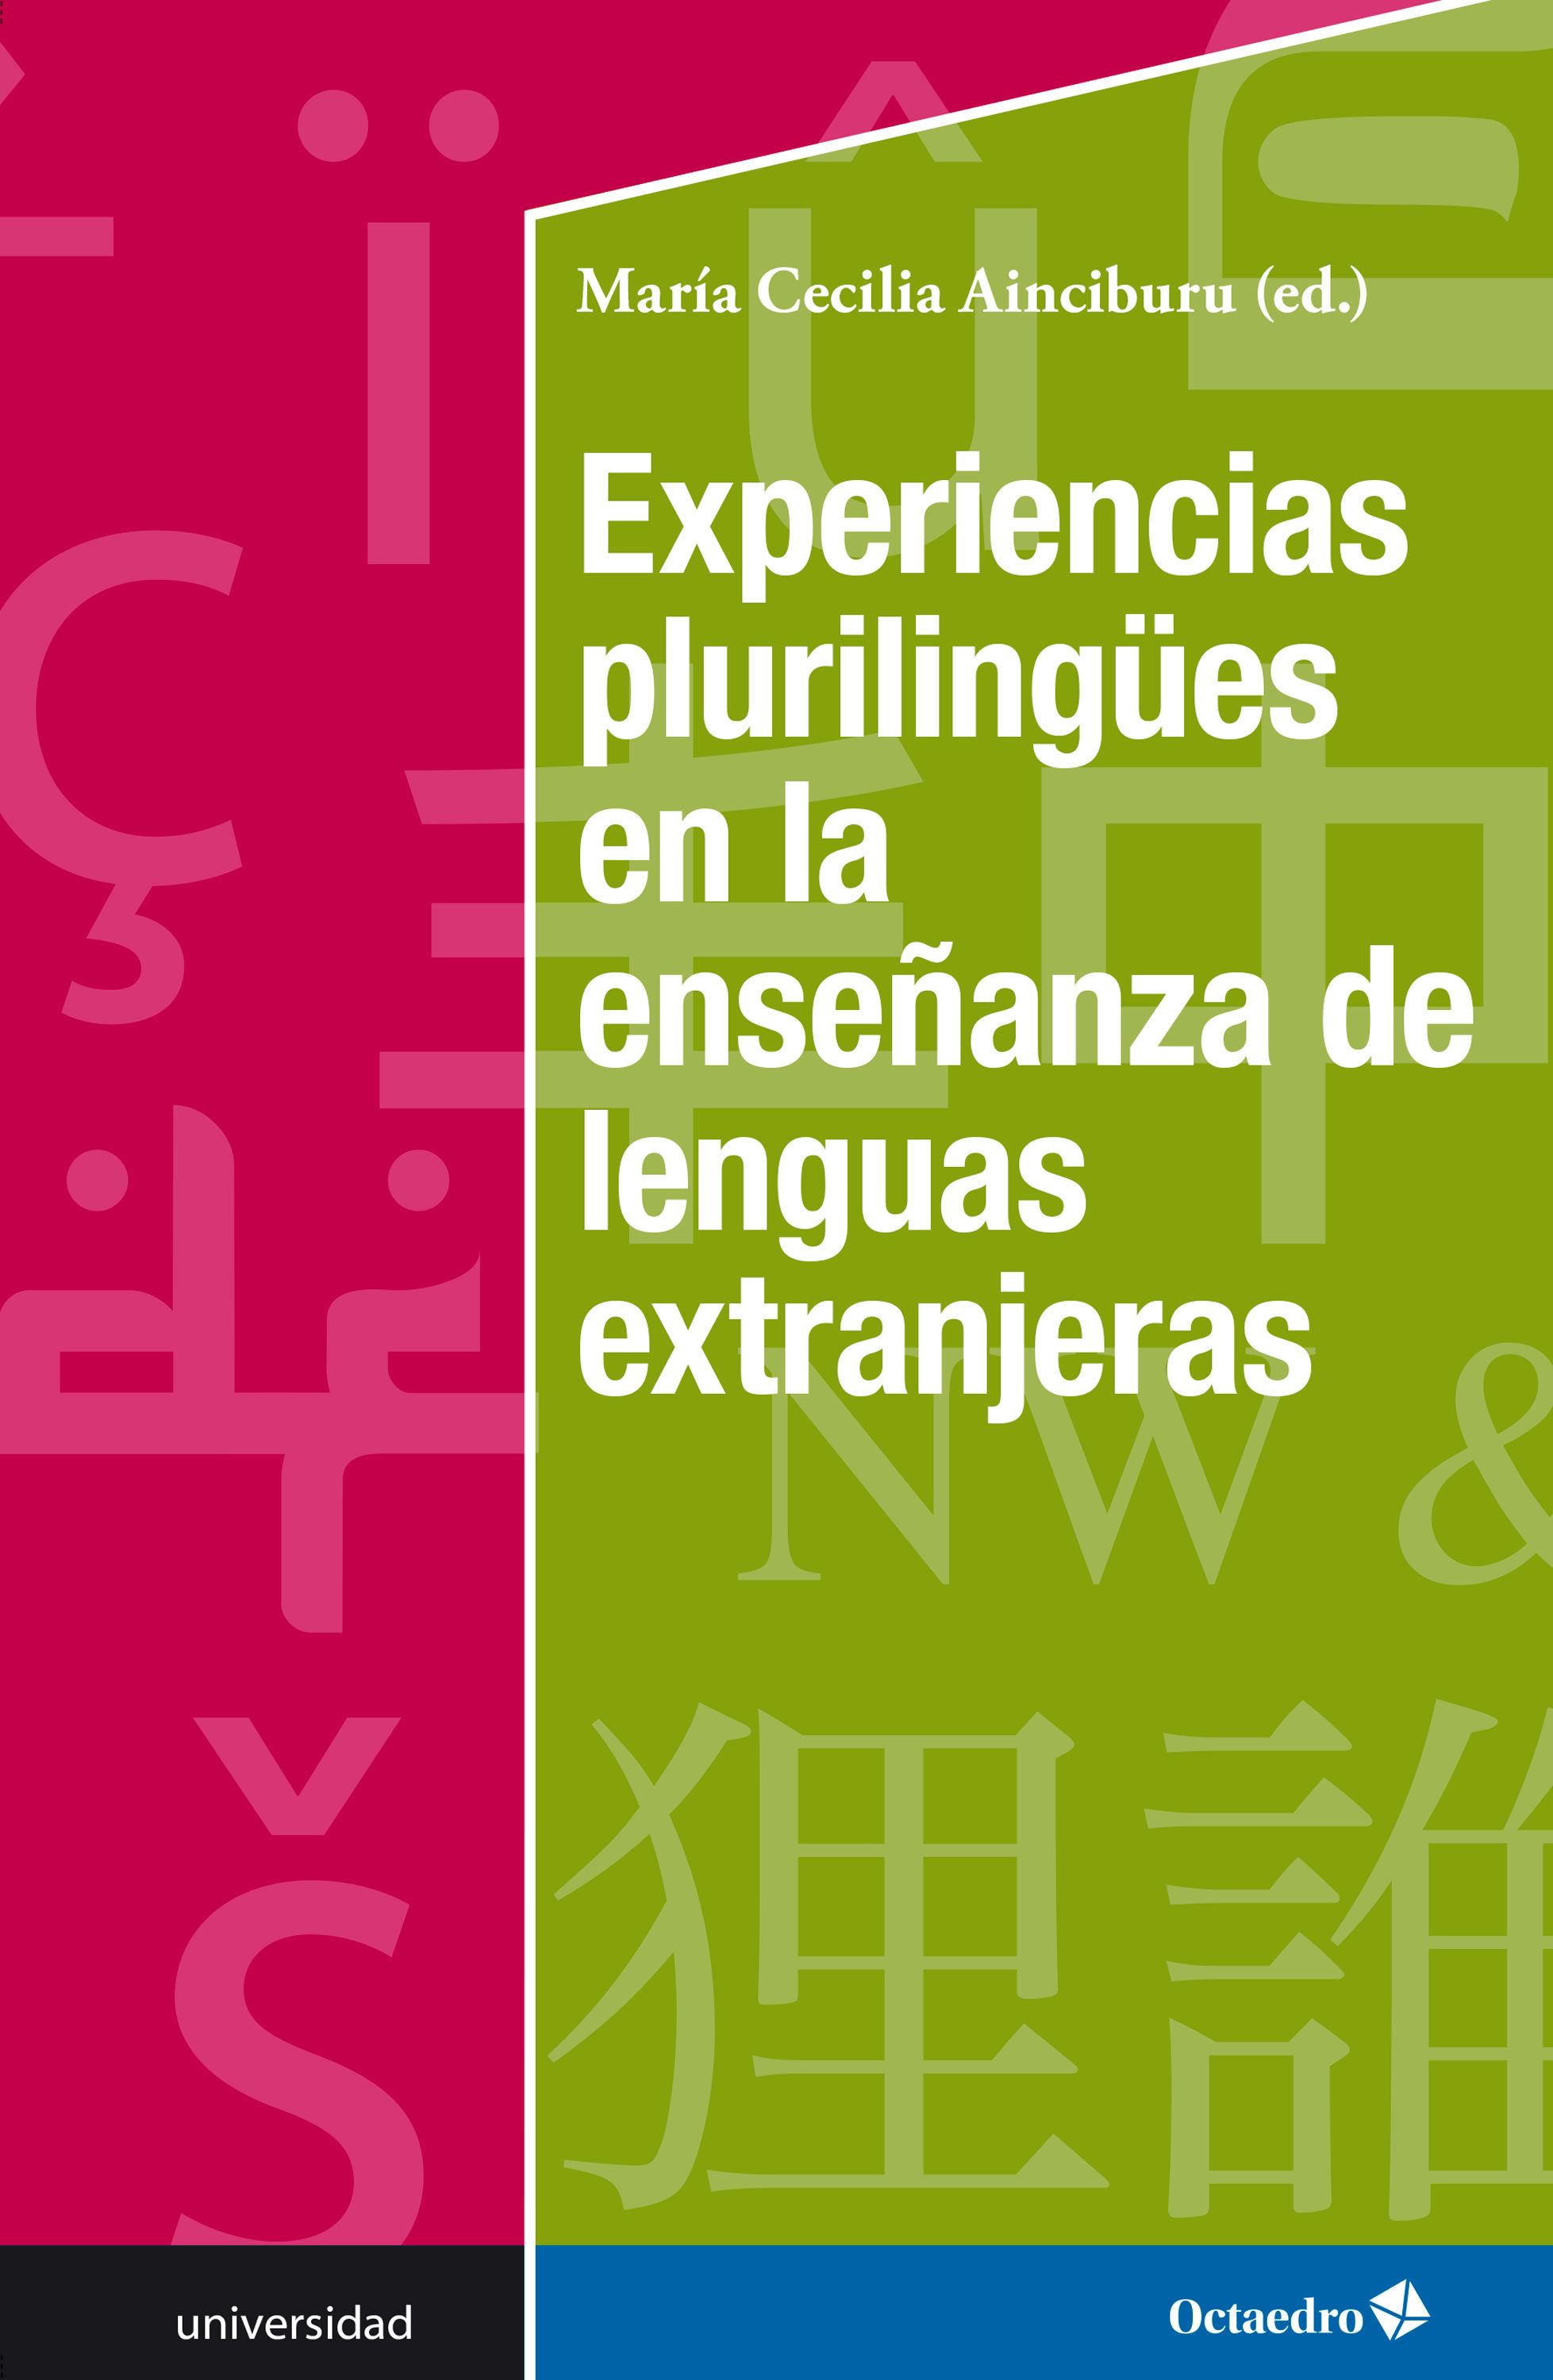 Imagen de portada del libro Experiencias plurilingües en la enseñanza de lenguas extranjeras